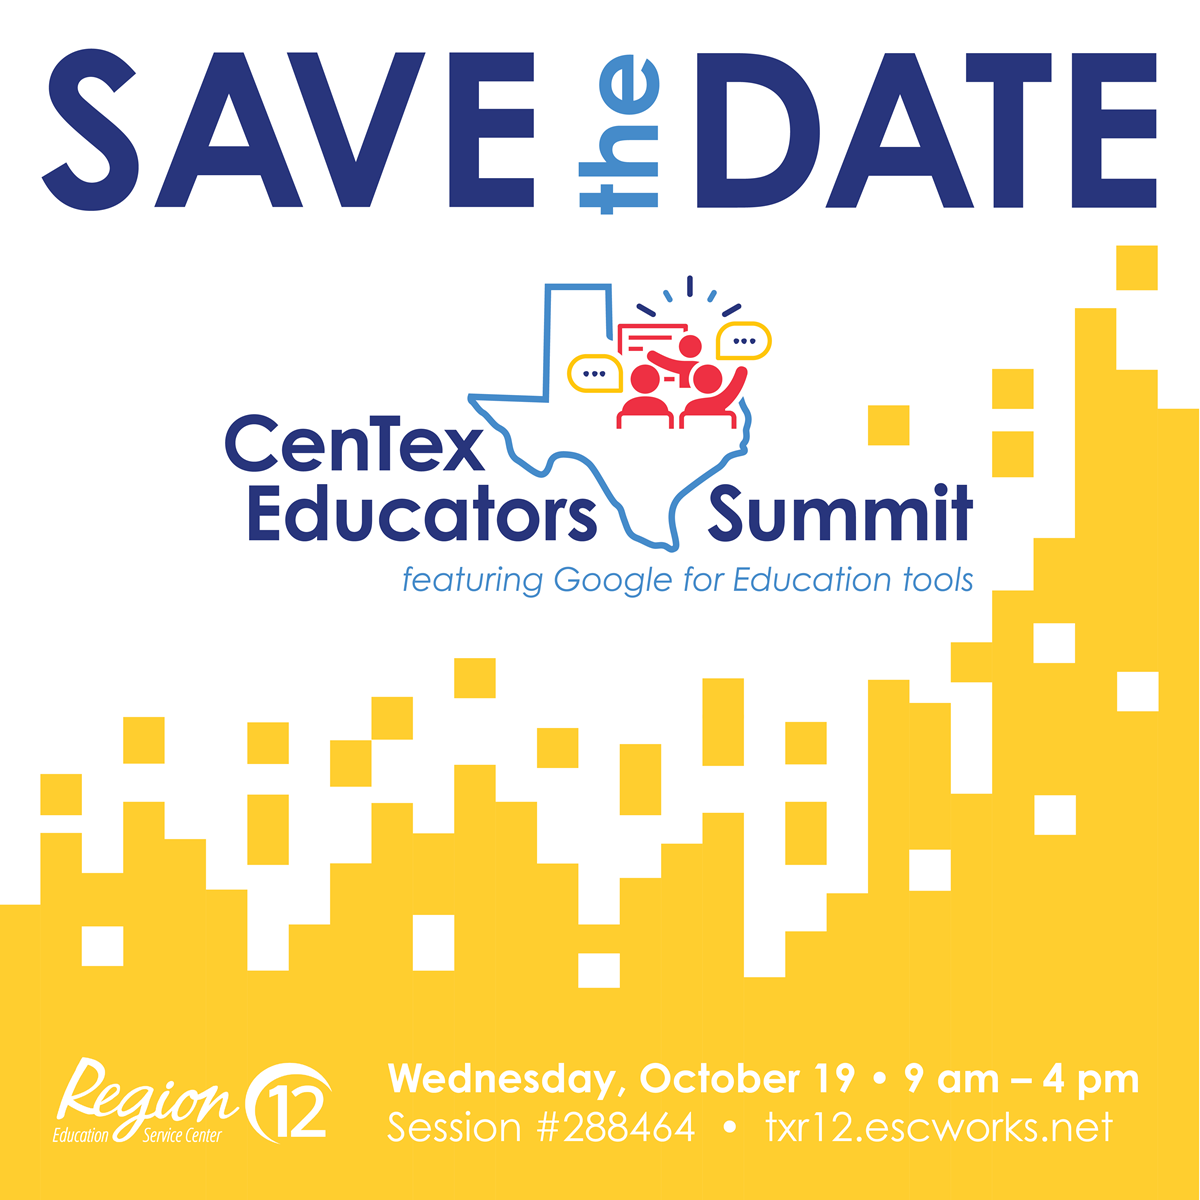 Centex Educators Summit featuring Google on October 19 at ESC Region 12.